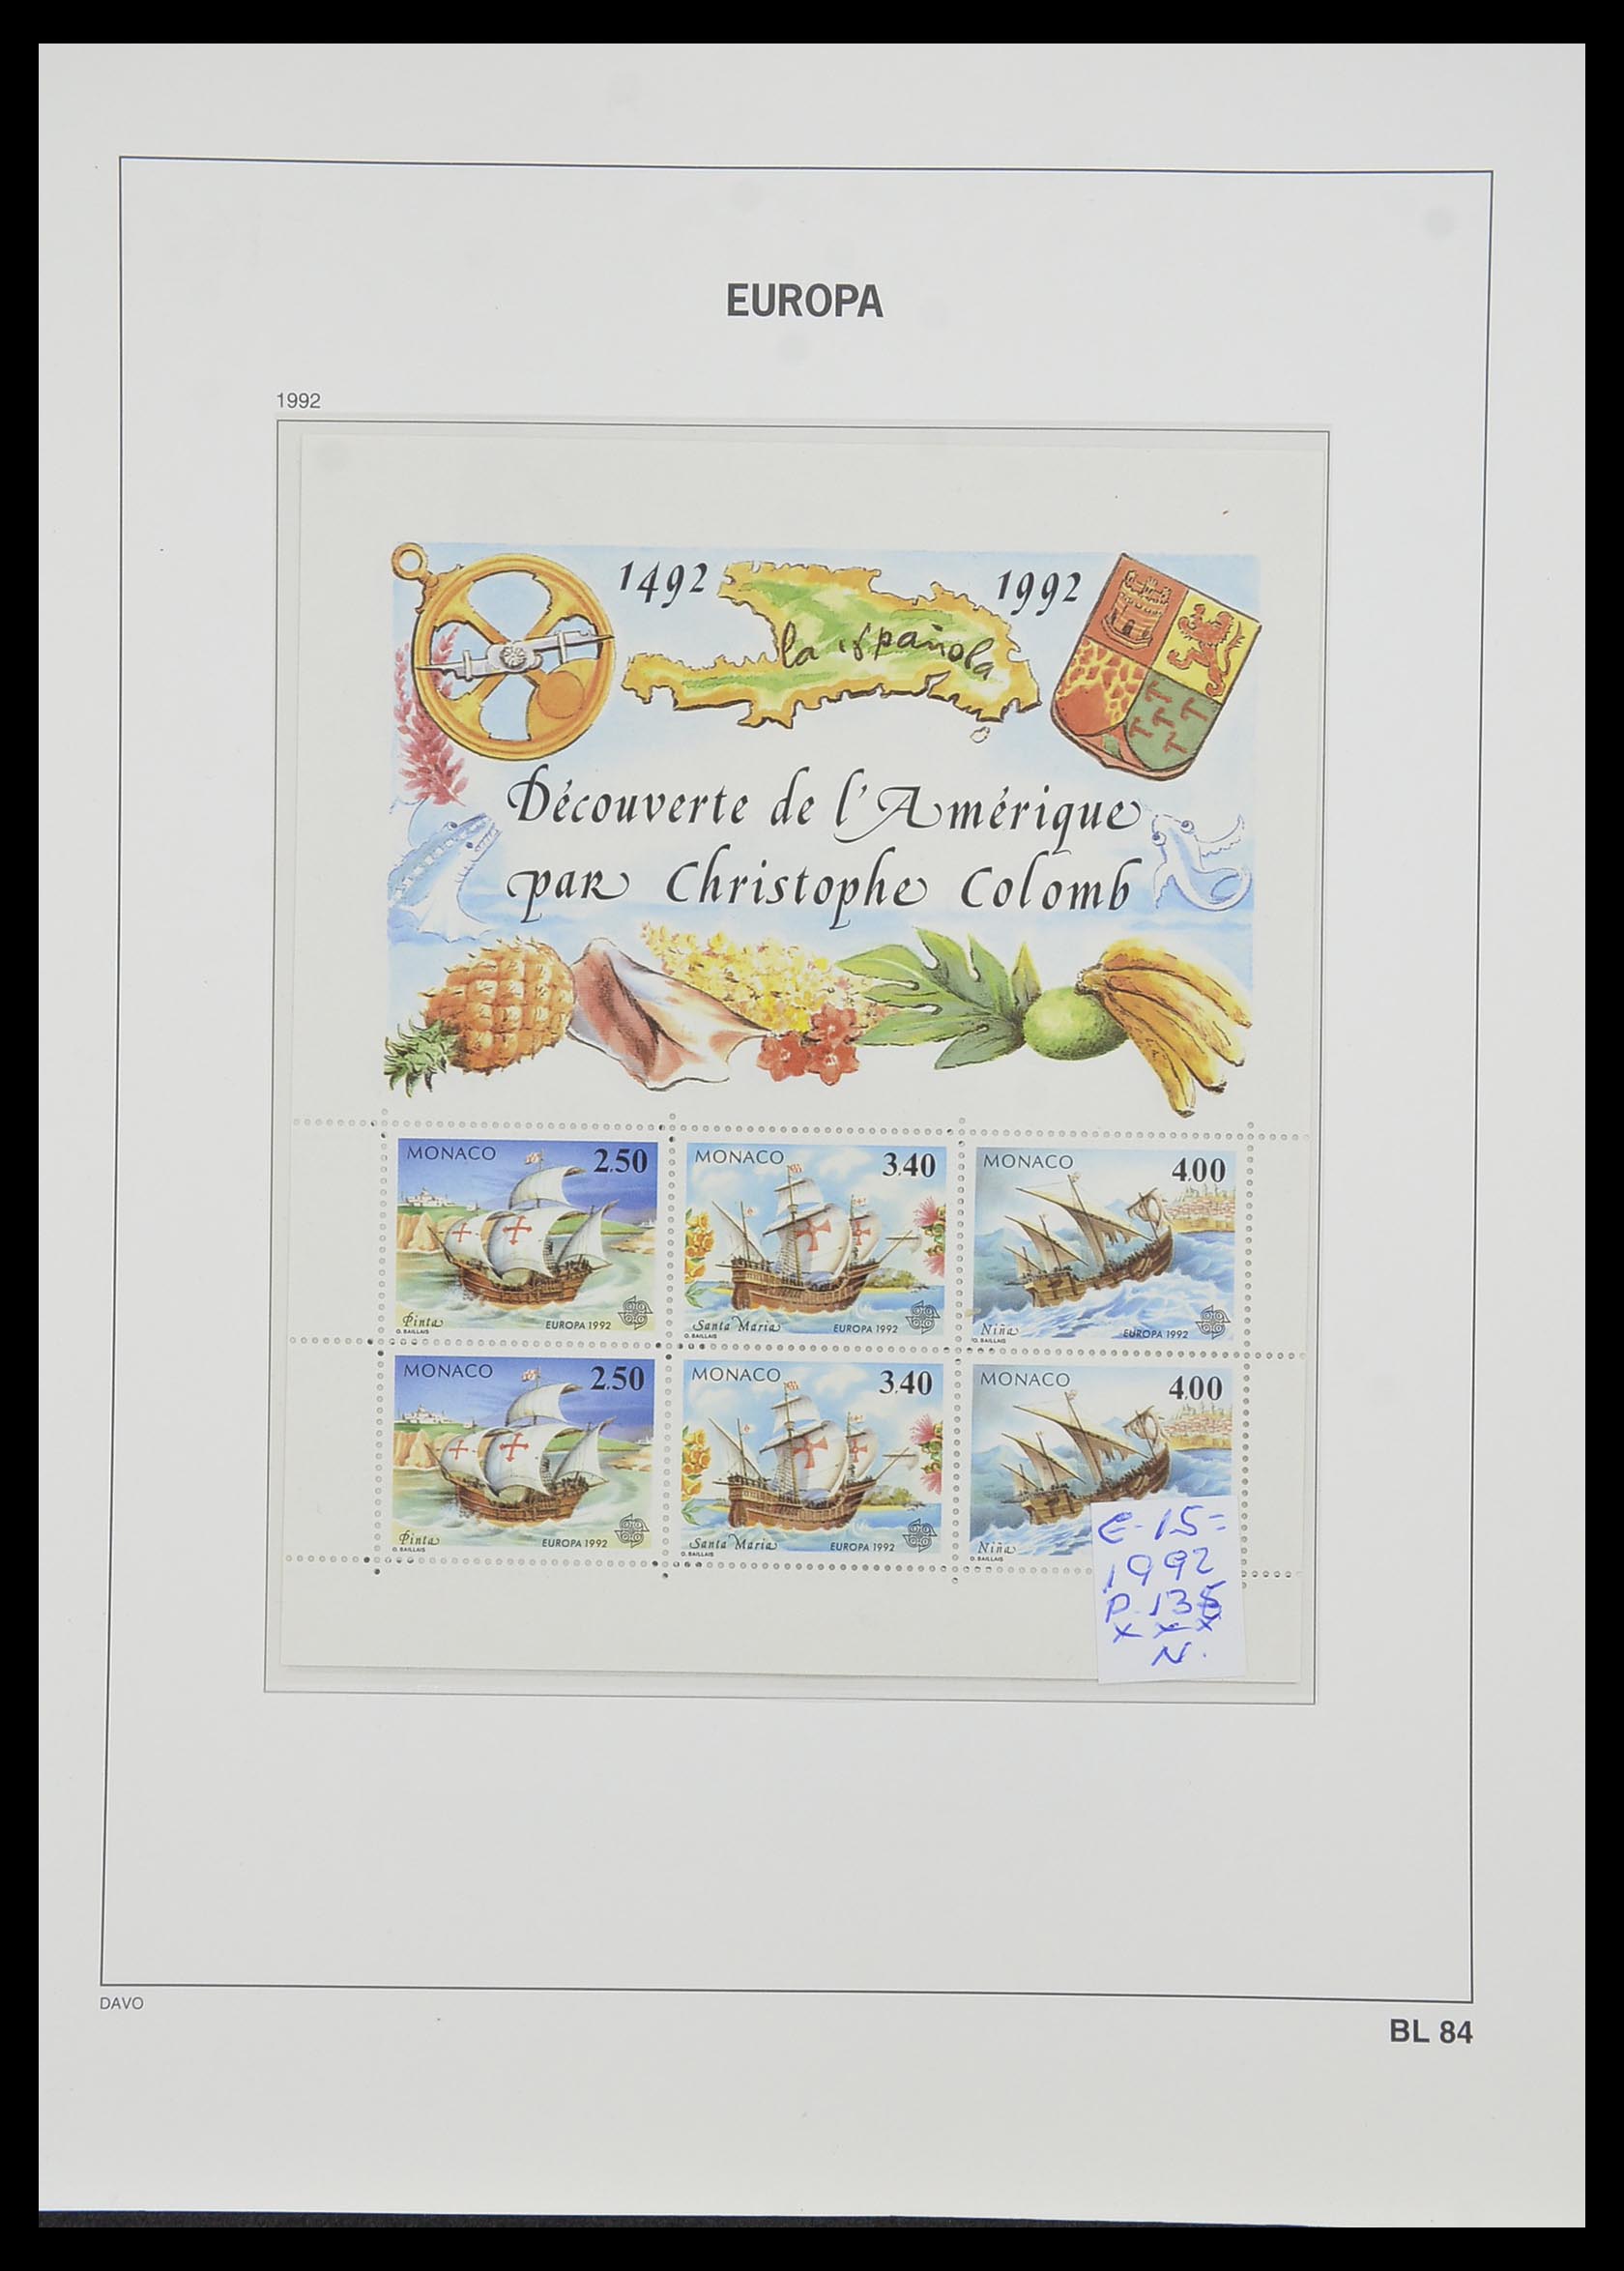 33985 072 - Stamp collection 33985 Europa CEPT souvenir sheets 1974-2014.